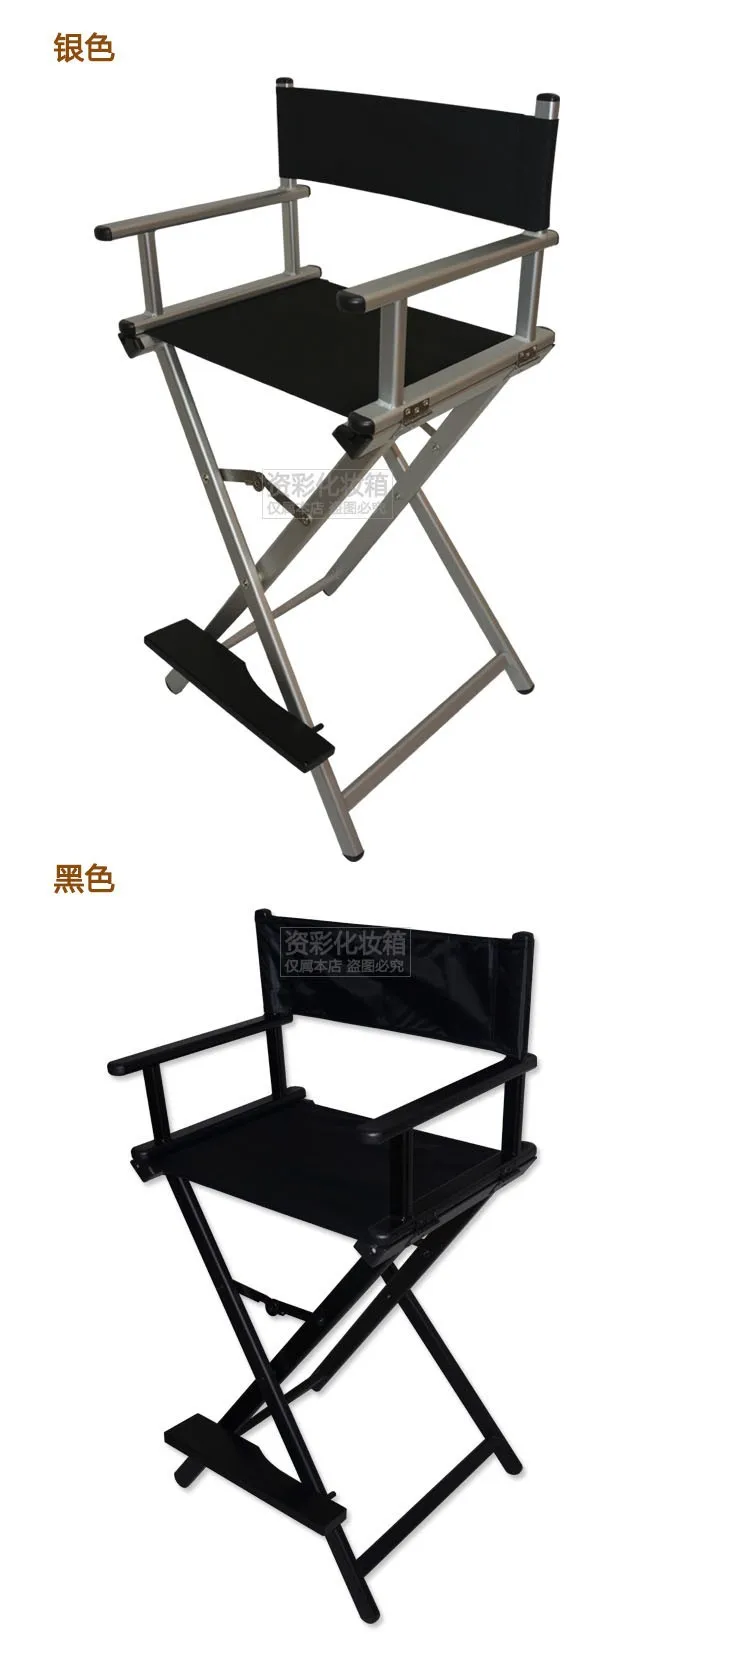 Кресла для макияжа станция визажист косметический чехол с подсветкой зеркальные ножки серебро и черный